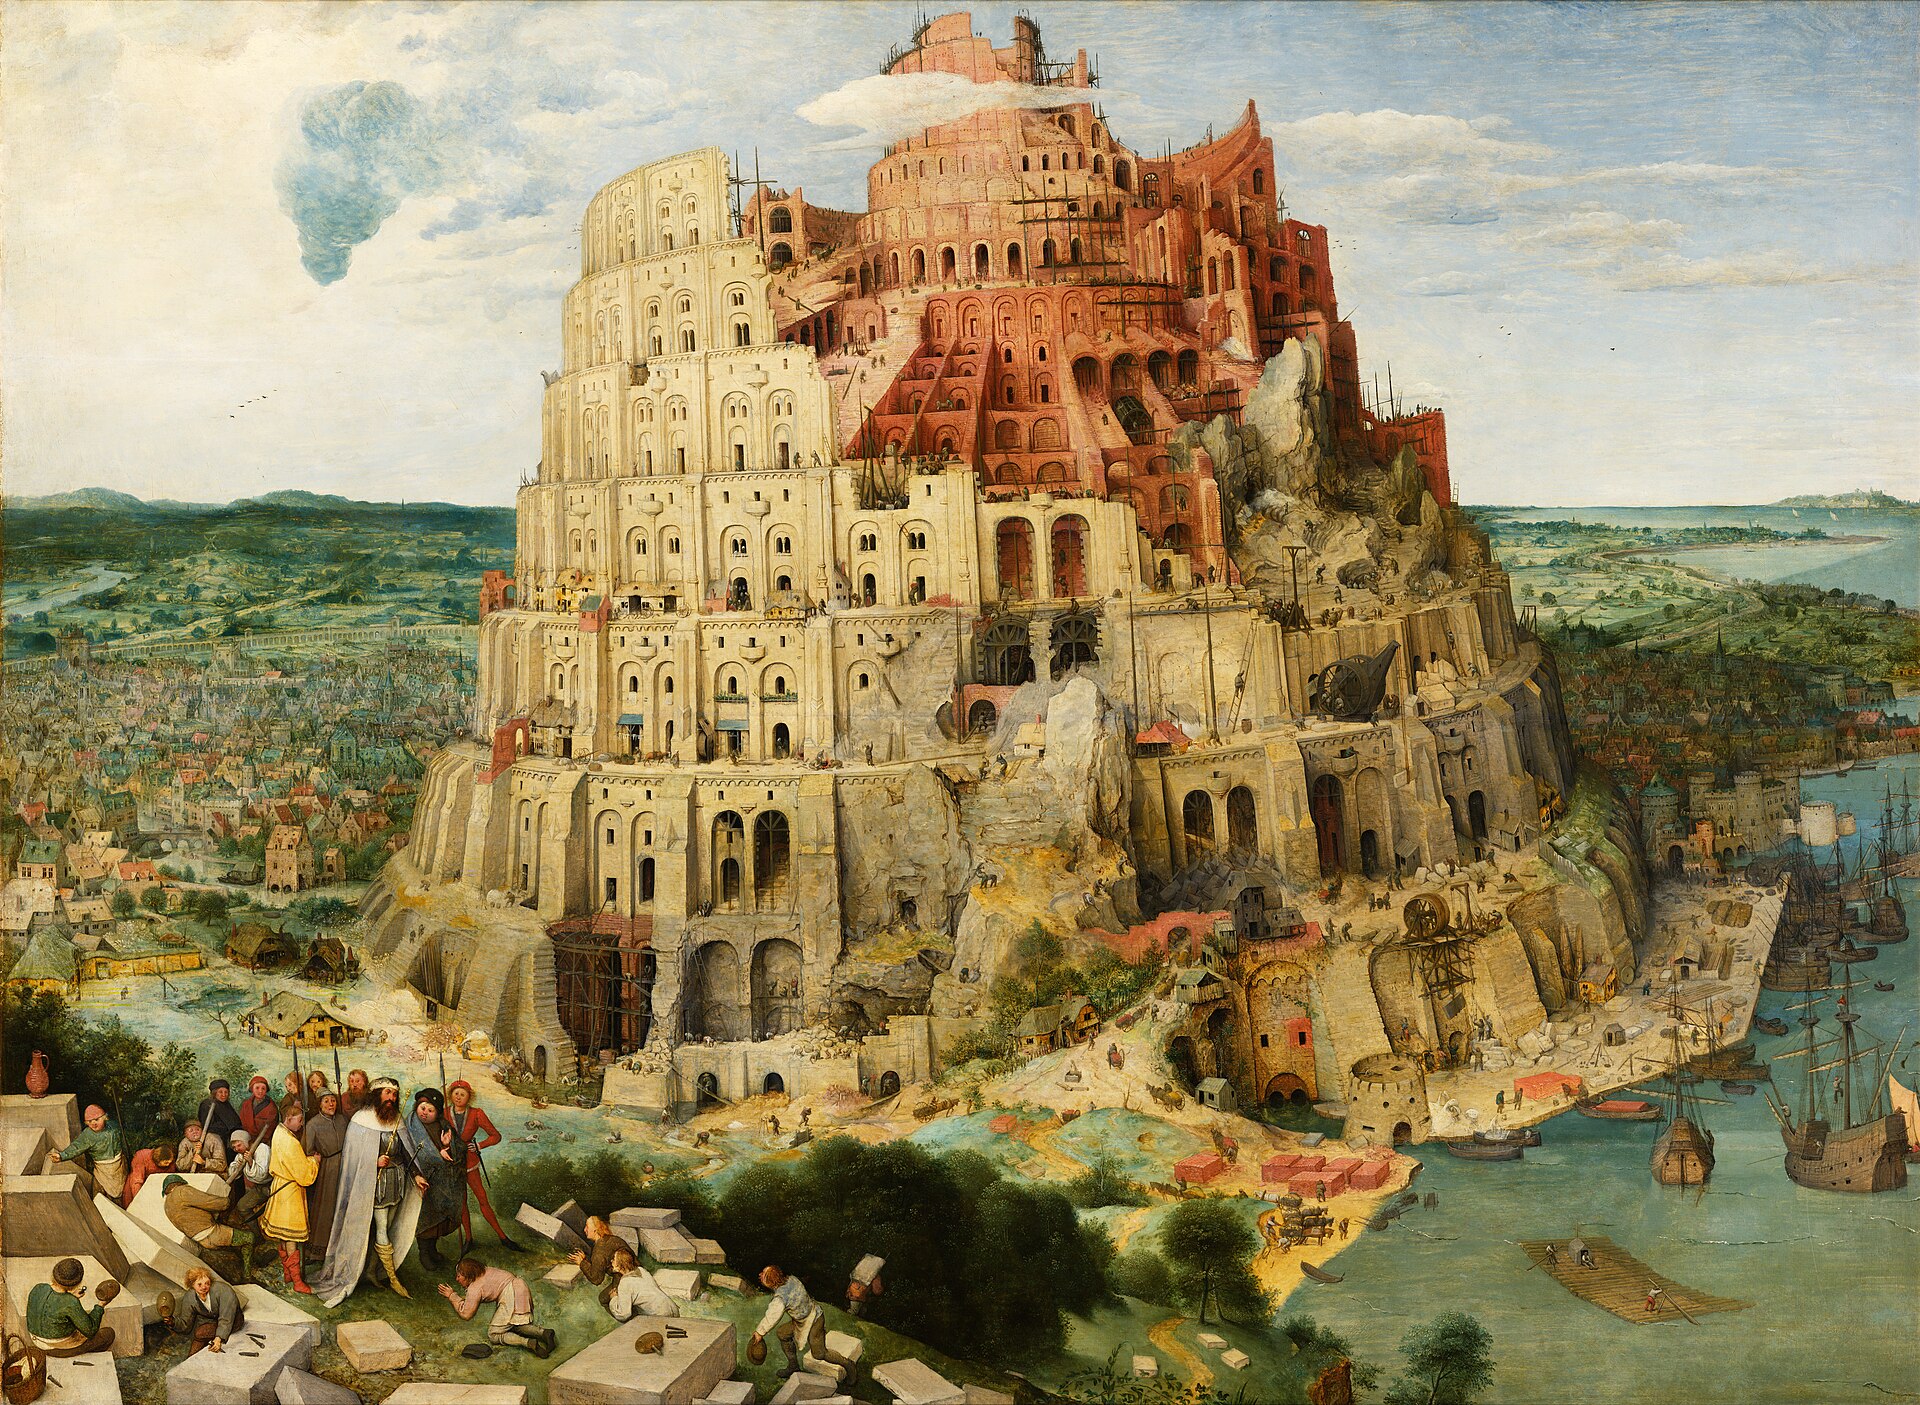 Wieża Babel by Pieter Bruegel the Elder - ok. 1563 r. - 114 × 155 cm 